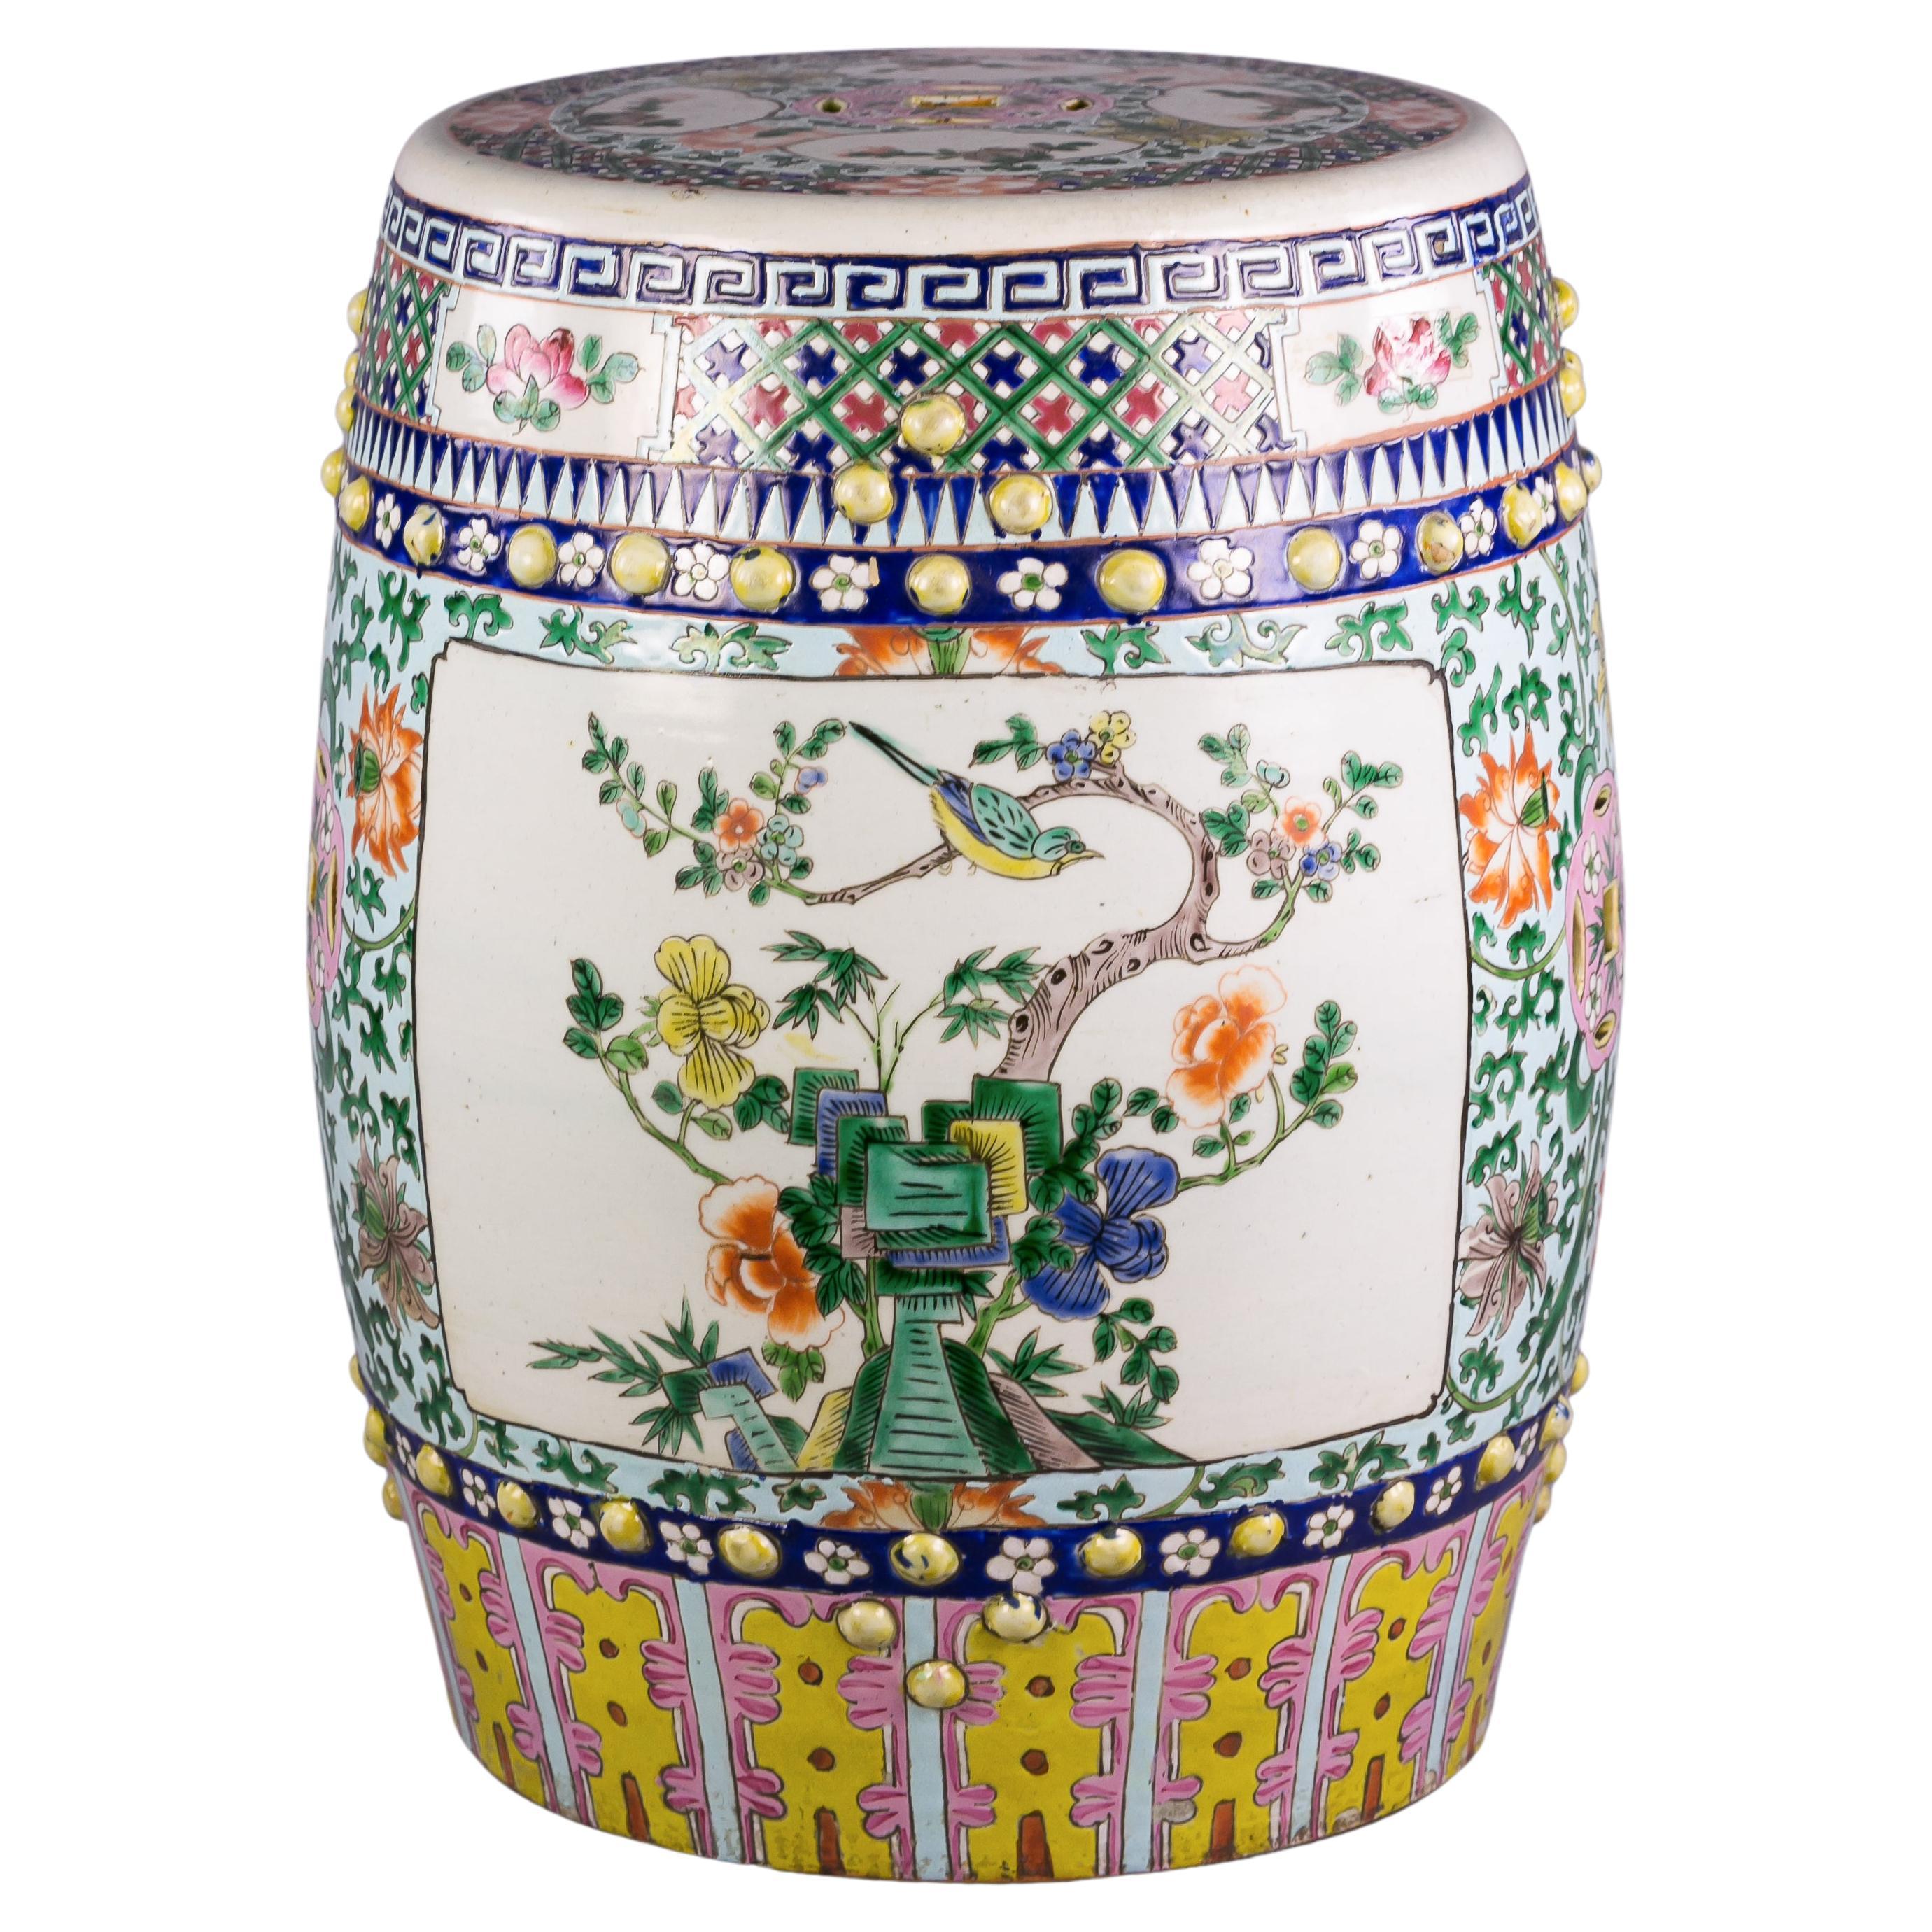 Siège de jardin en porcelaine chinoise Famille Verte, datant d'environ 1860